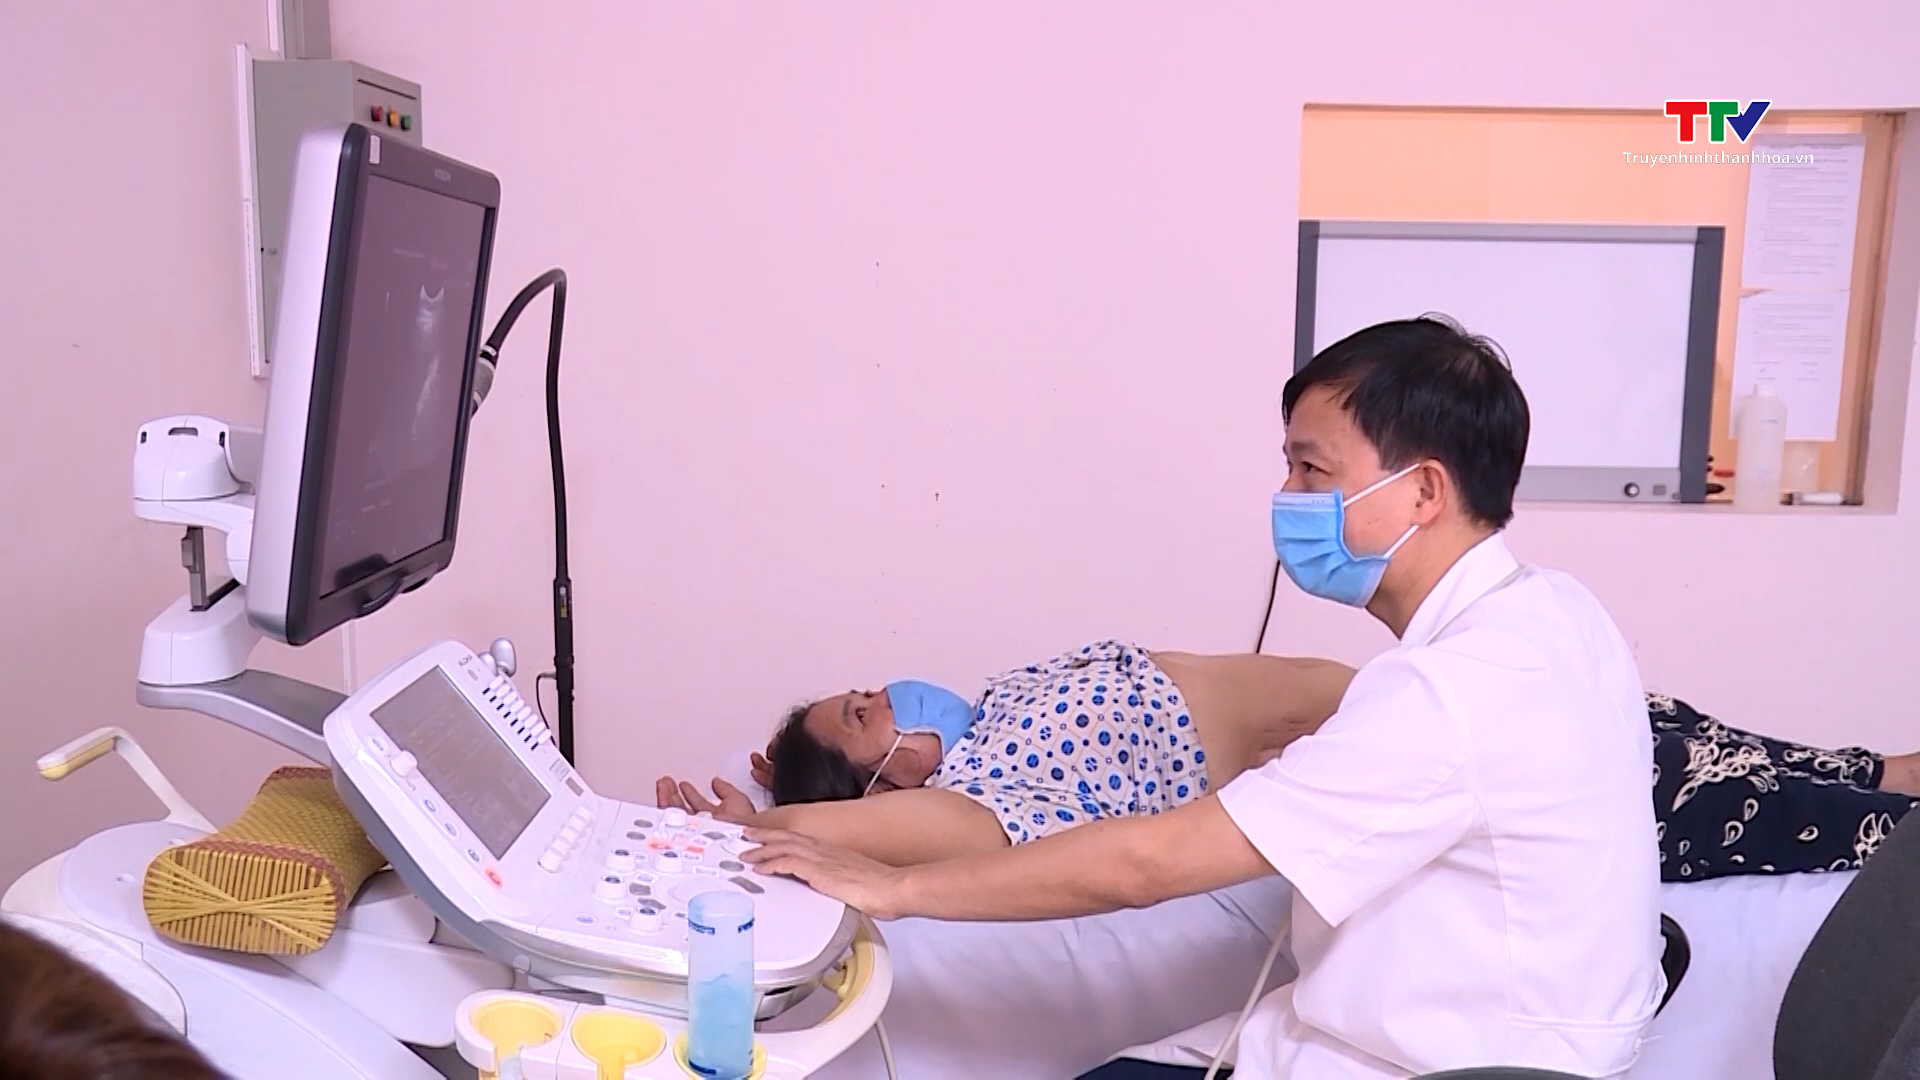 Ung thư gan: Căn bệnh gây tử vong nhiều nhất tại Việt Nam- Ảnh 2.